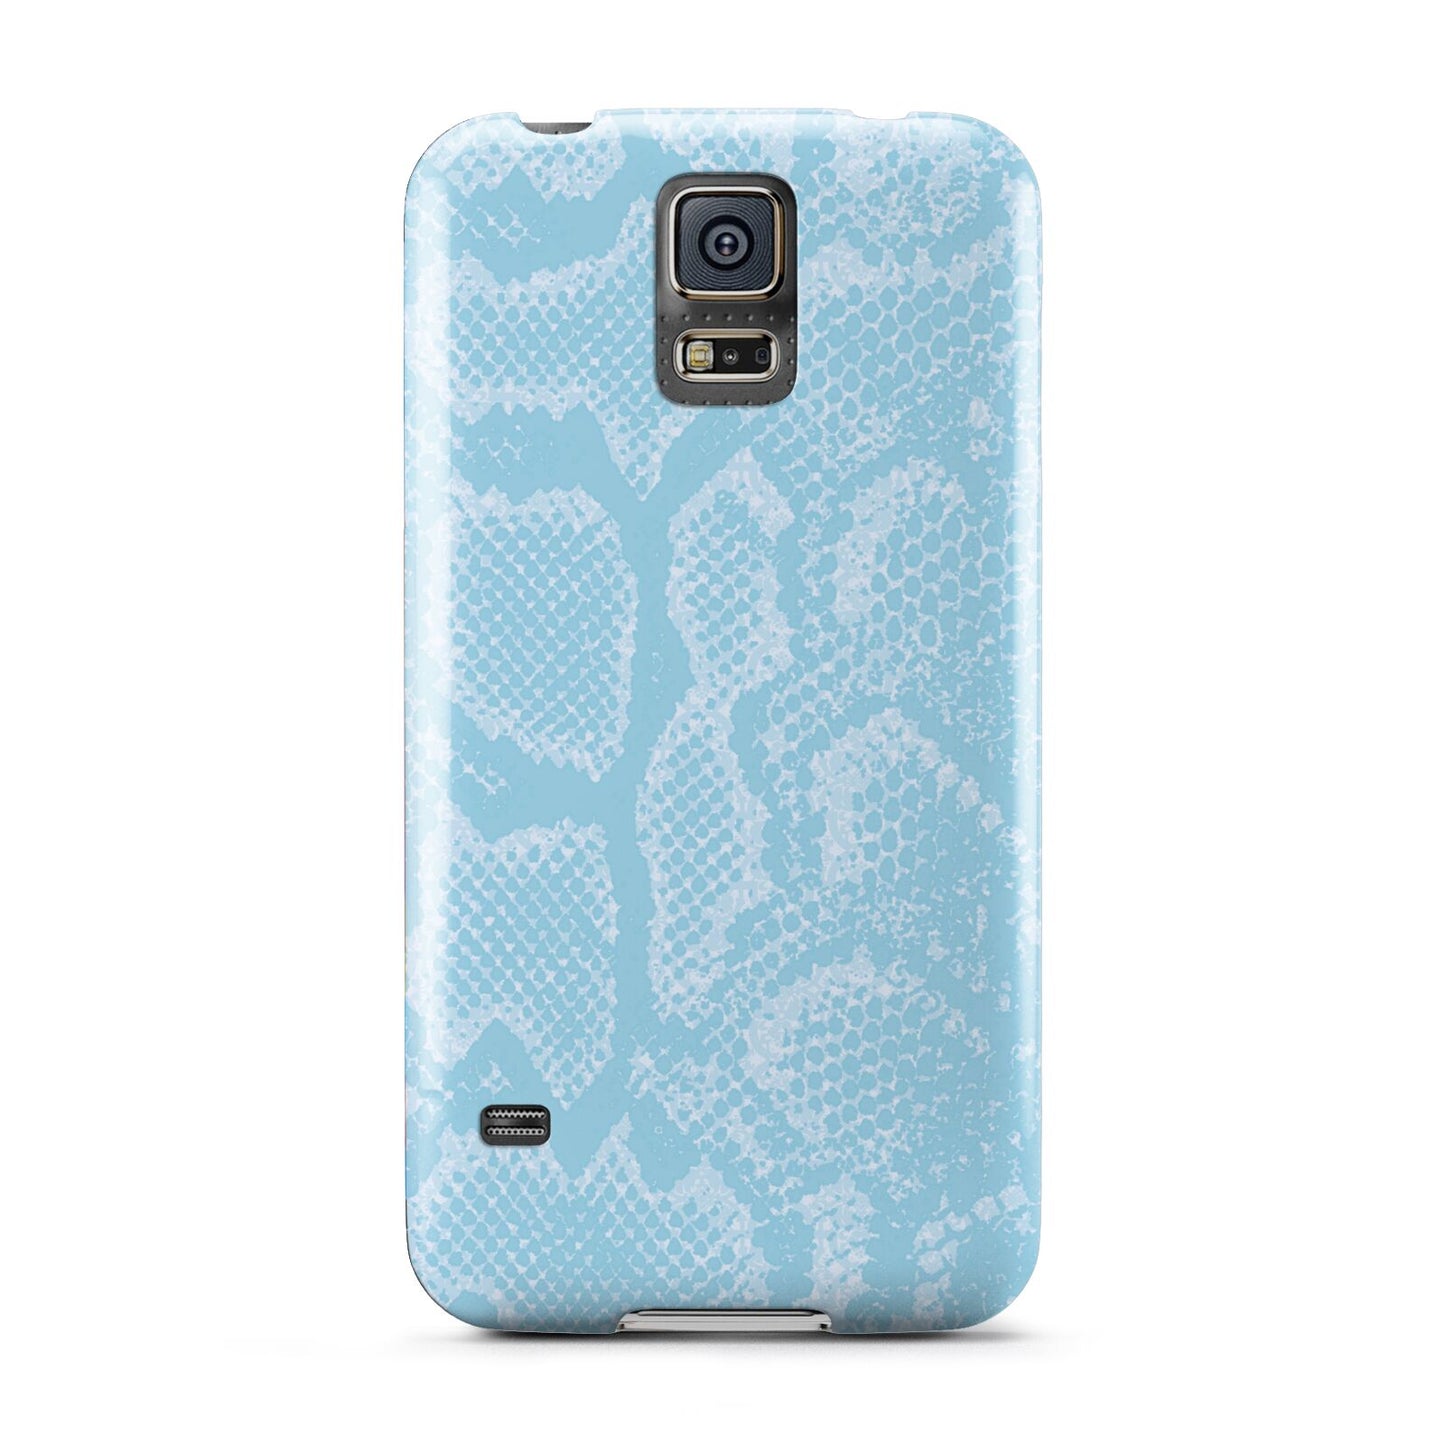 Blue Snakeskin Samsung Galaxy S5 Case